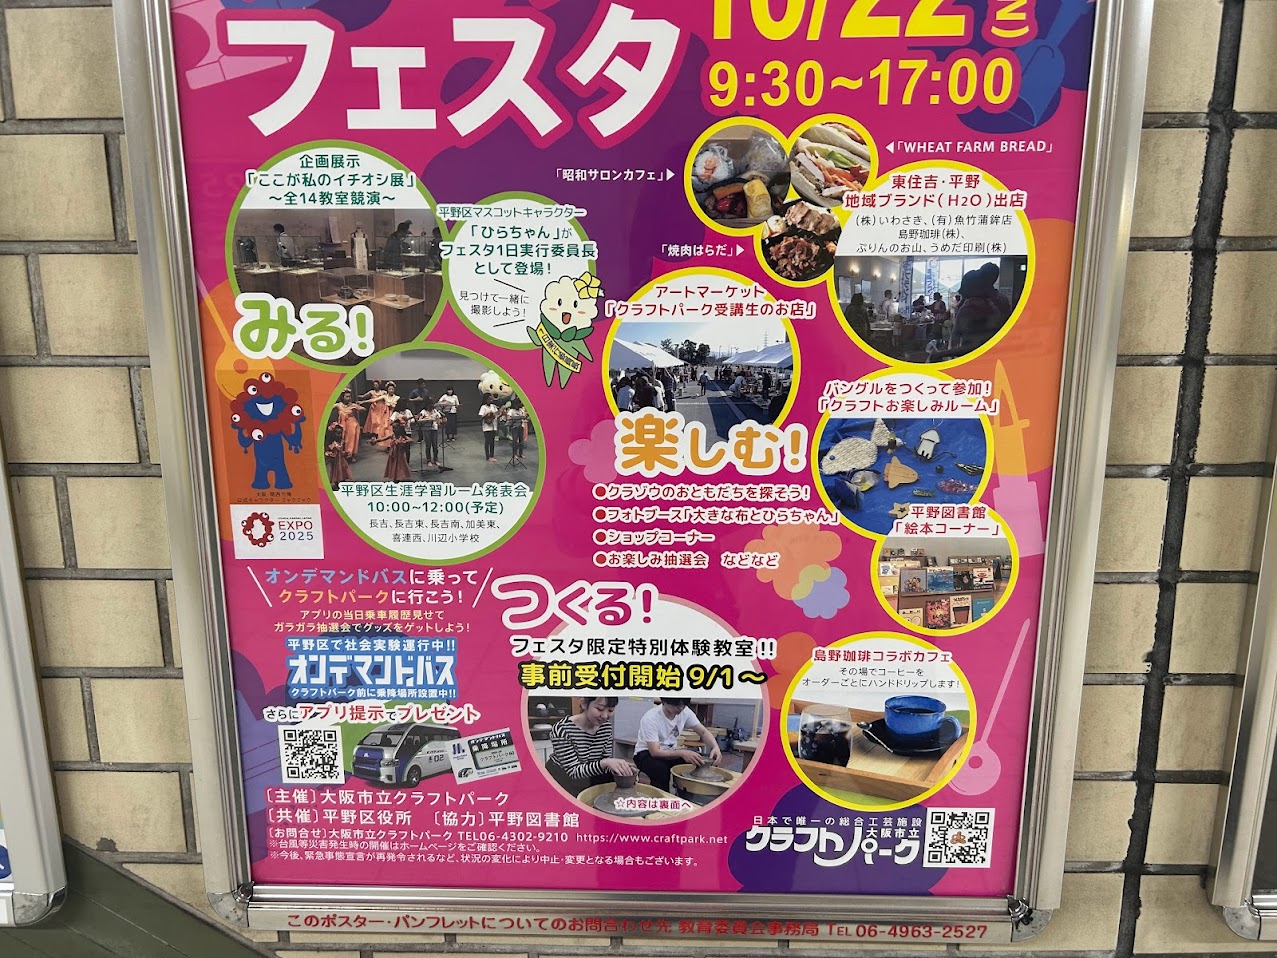 大阪市平野区みる楽しむつくる10月22日 日 大阪市立クラフトパークでクラフトパークフェスタが開催されます 号外NET 平野区